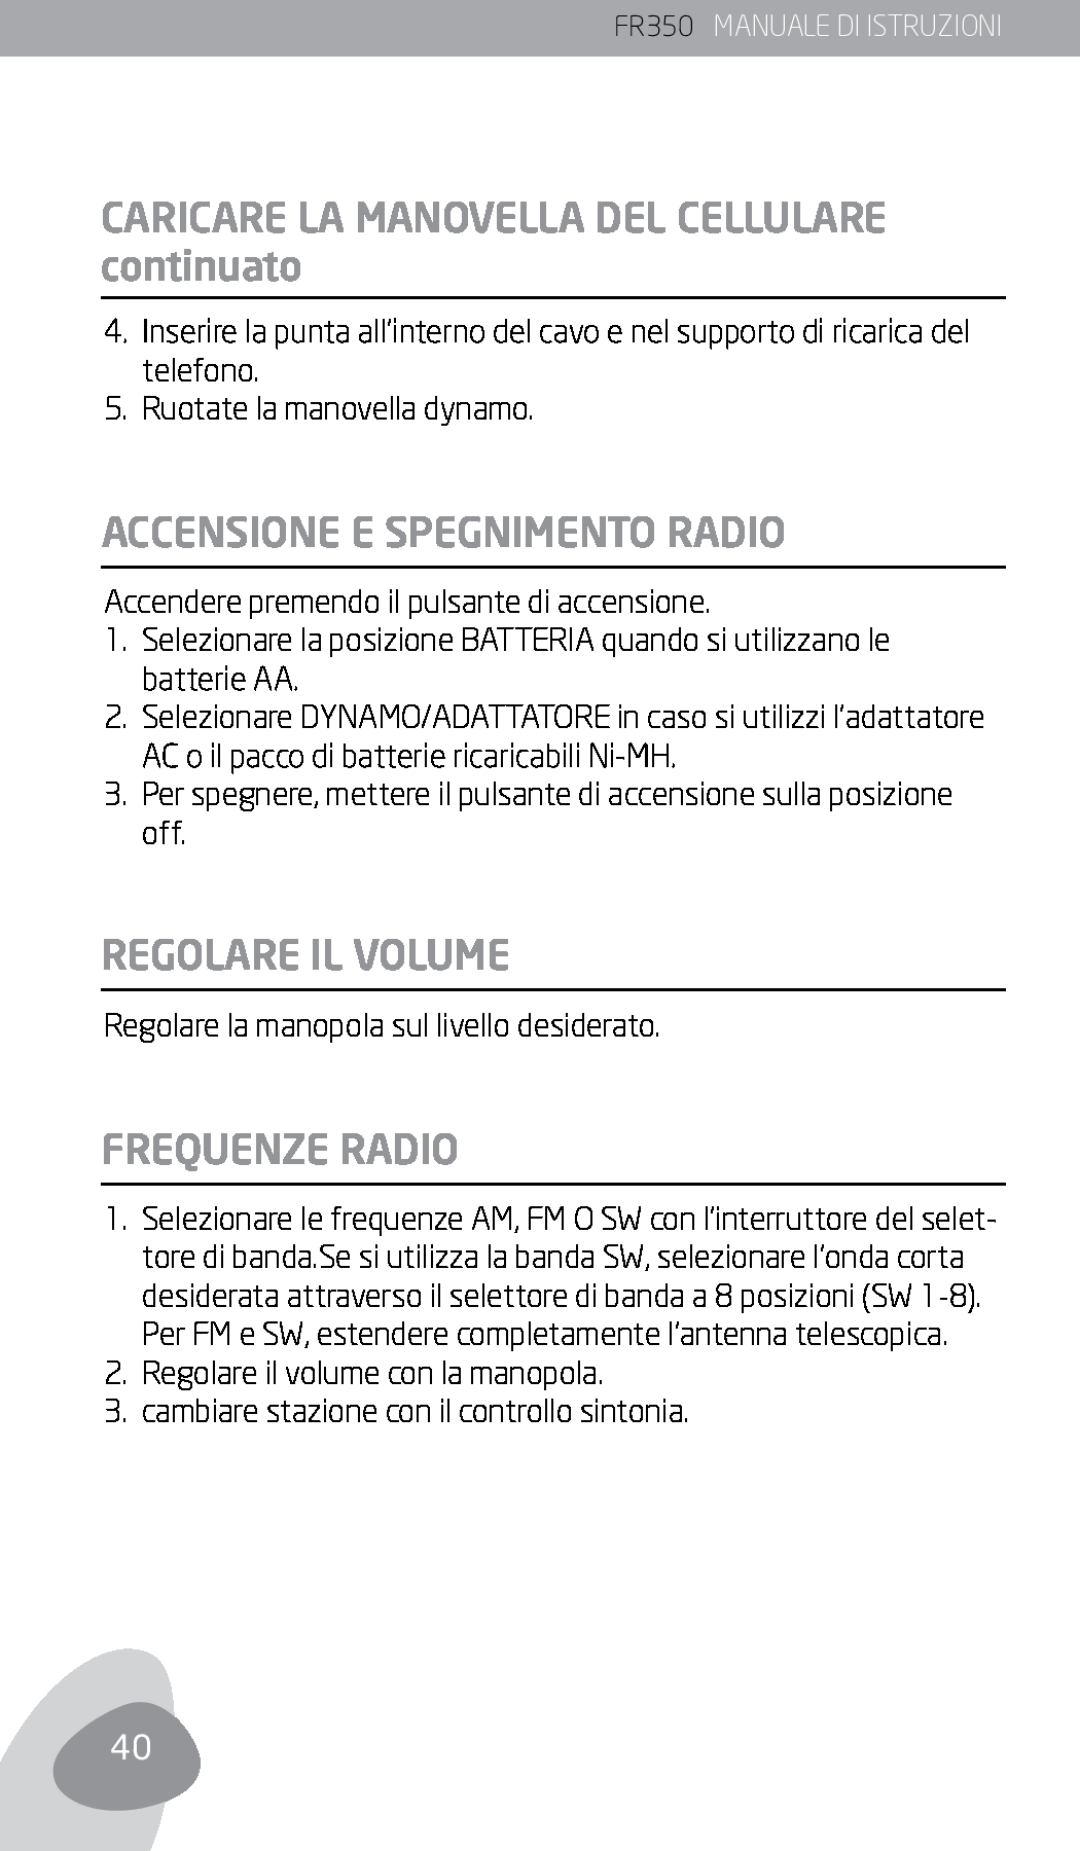 Eton FR350 owner manual CARICARE LA MANOVELLA DEL CELLULARE continuato, Accensione E Spegnimento Radio, Regolare Il Volume 